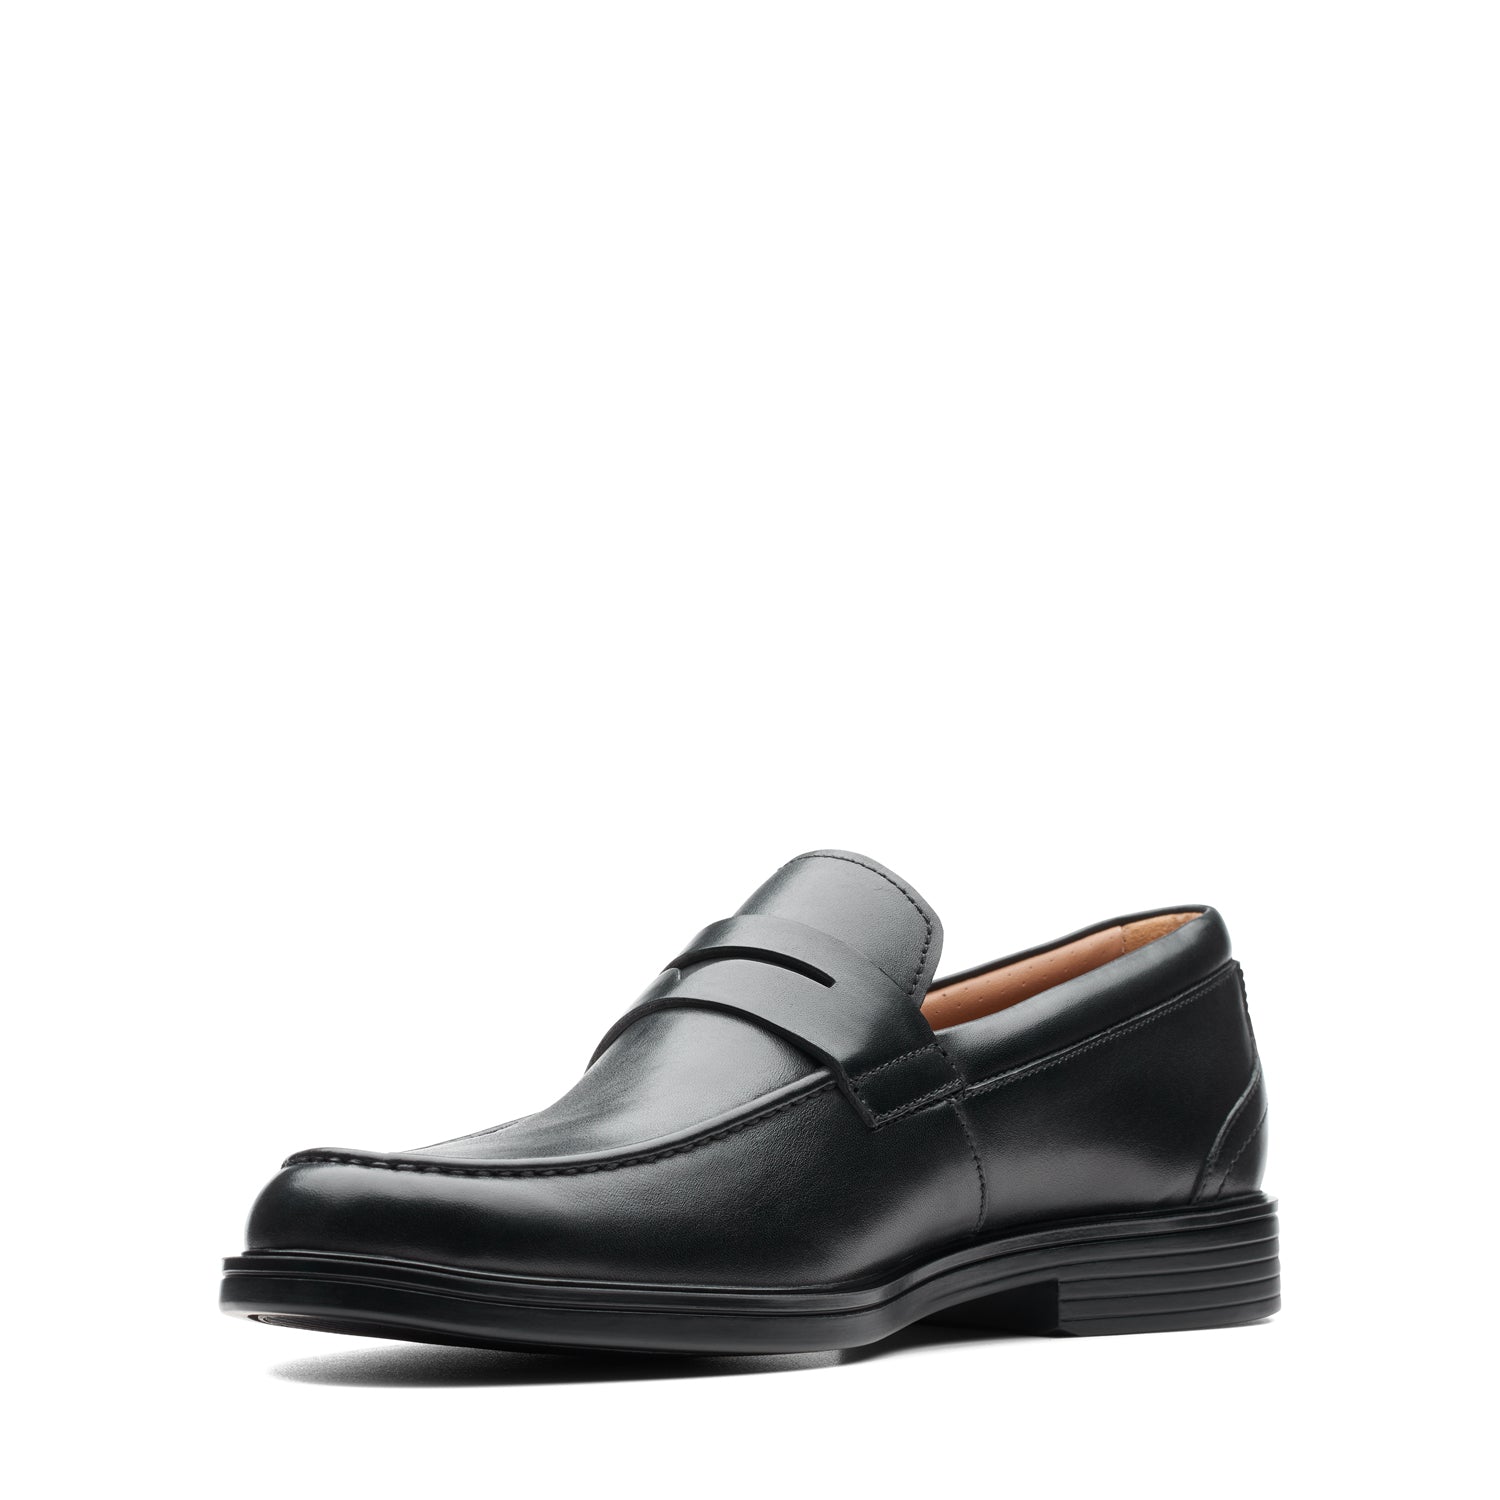 Clarks Un Aldric Step Shoes - Black Leather - 261401397 - G Width (Standard Fit)